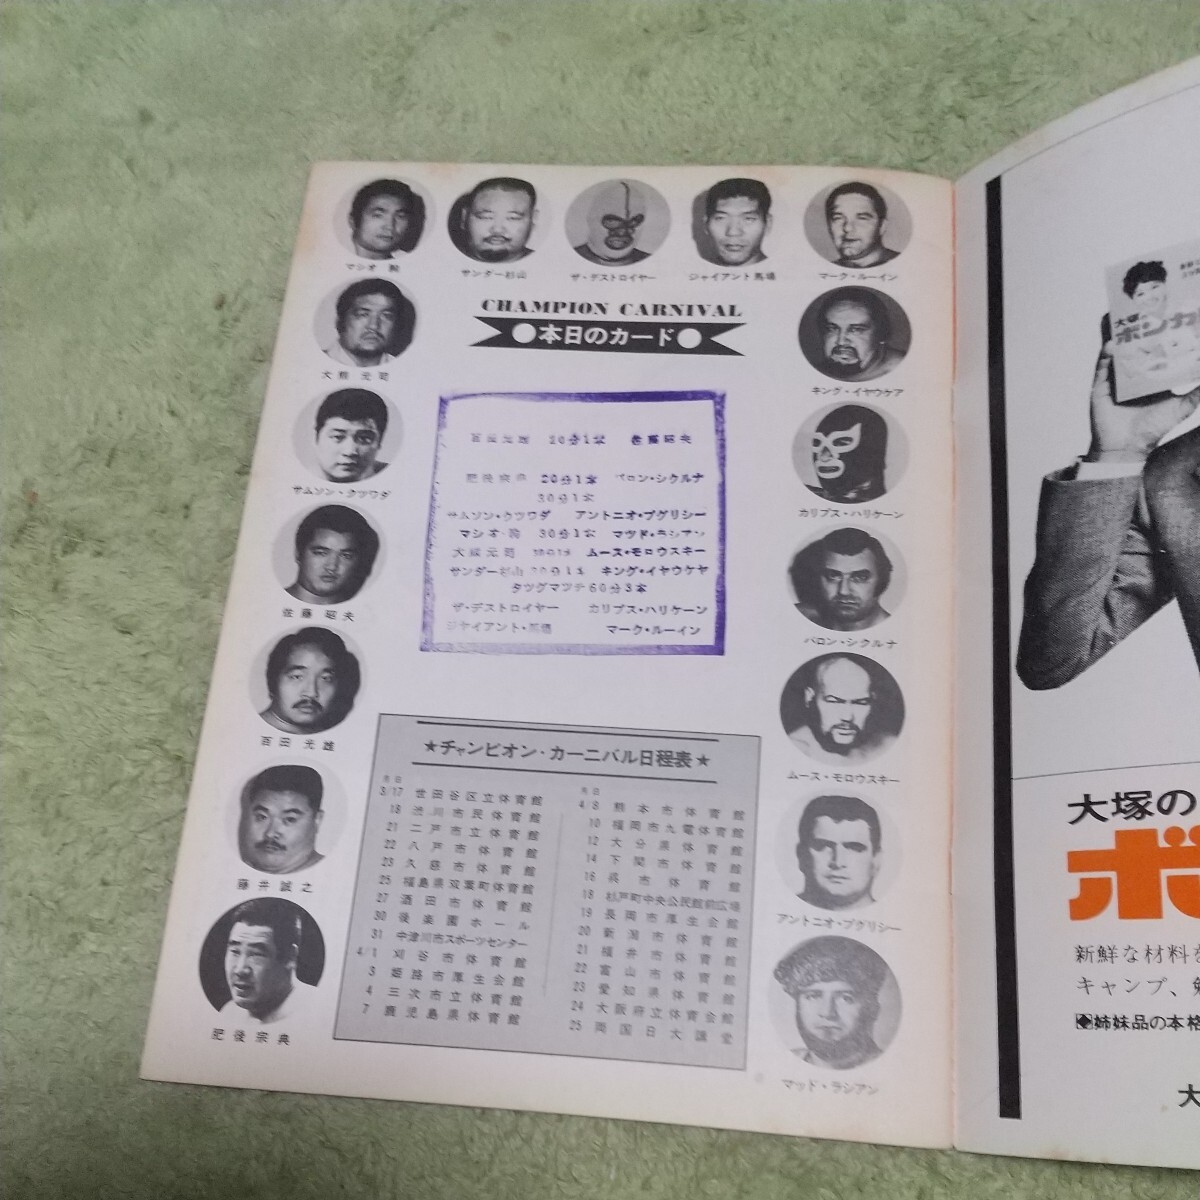 全日本プロレスパンフレット 馬場 鶴田チヤンピオンカーニバル1973年スタンプありの画像2